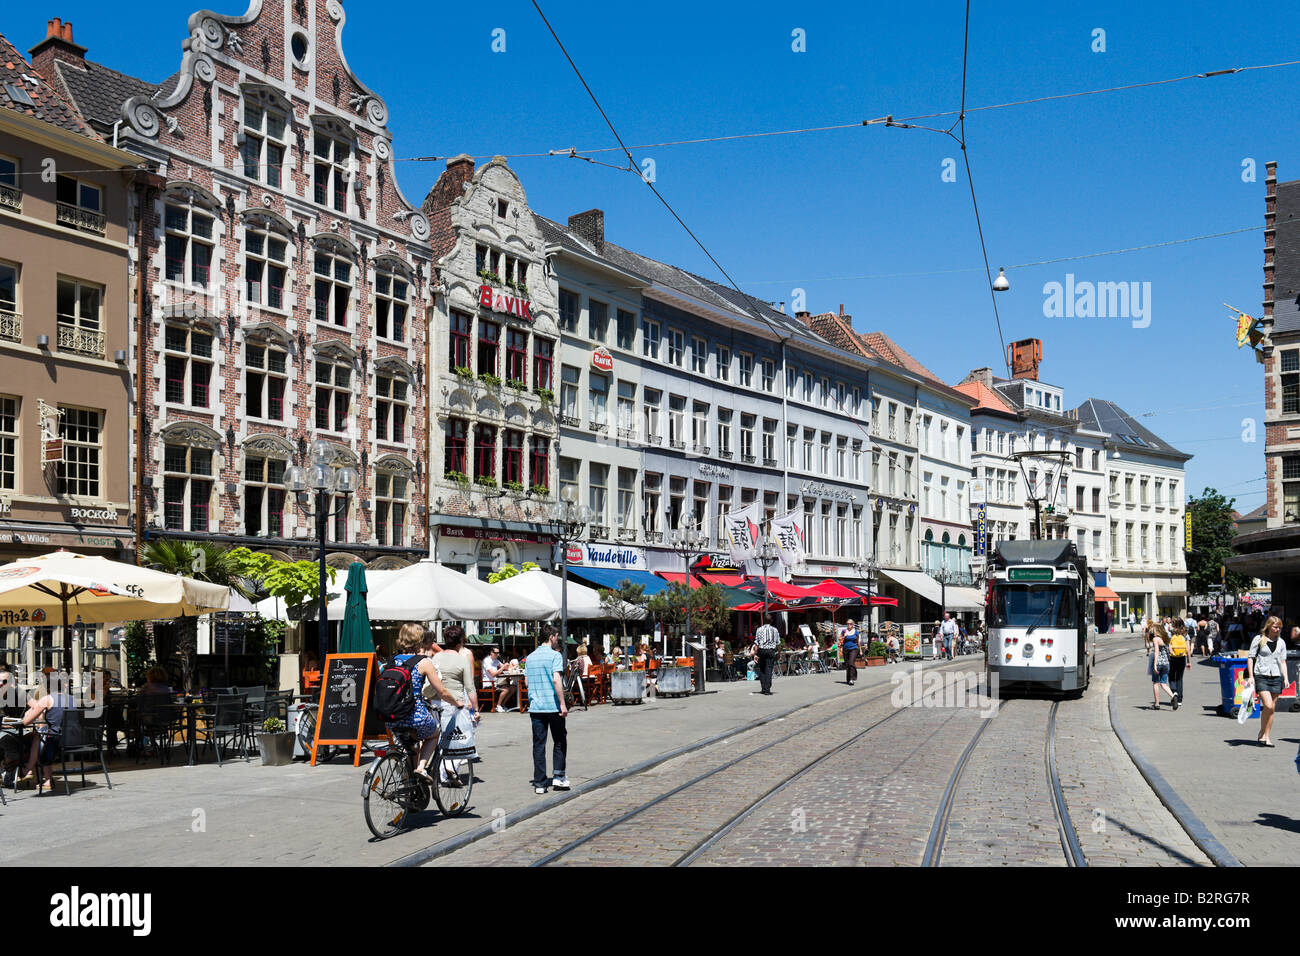 Le tram et le café sur le Korenmarkt, dans le centre-ville historique, Gand, Belgique Banque D'Images